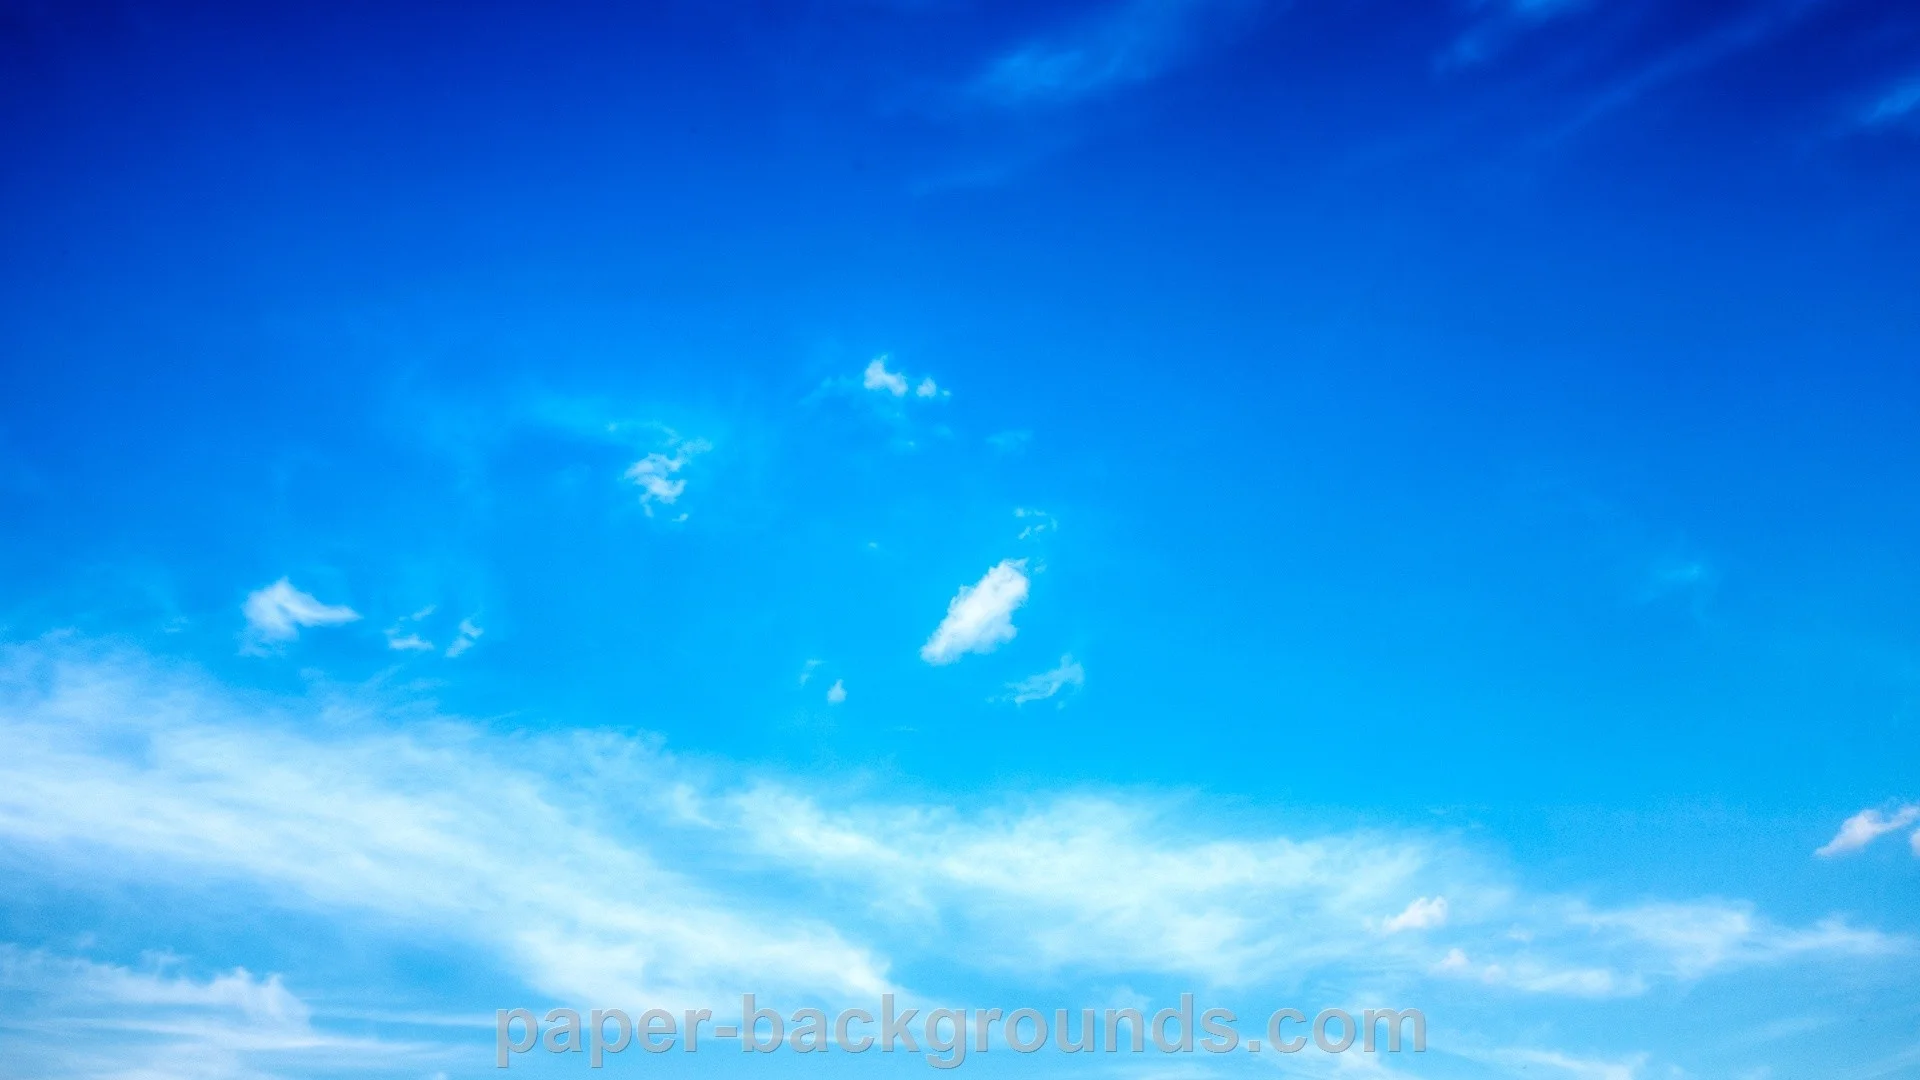 Blue Sky Images  Free Download on Freepik